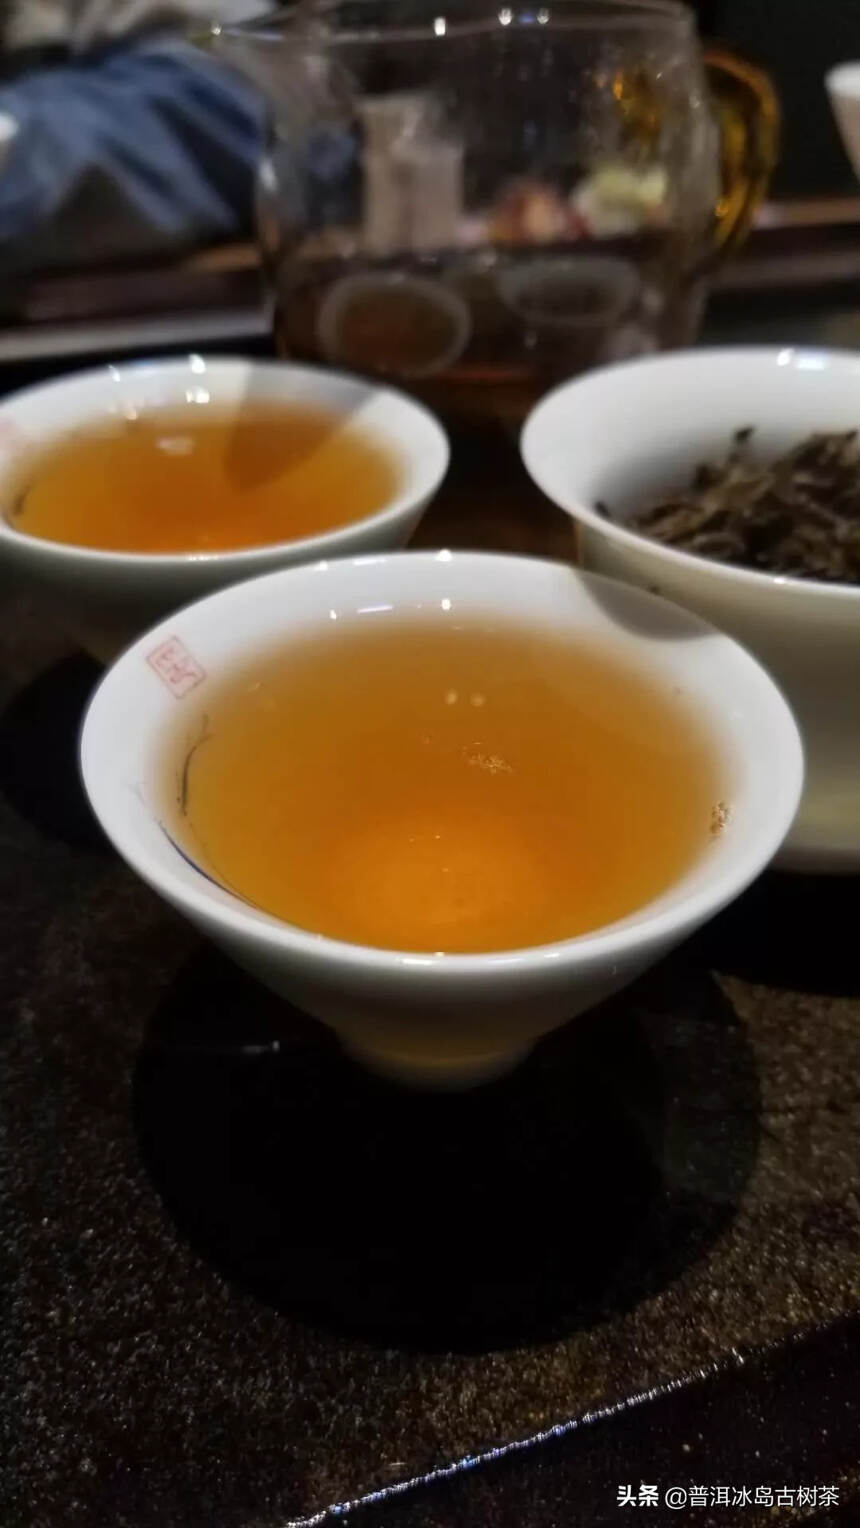 92年绿印生茶，傣文92青。干仓老茶，霸气香甜，厚度